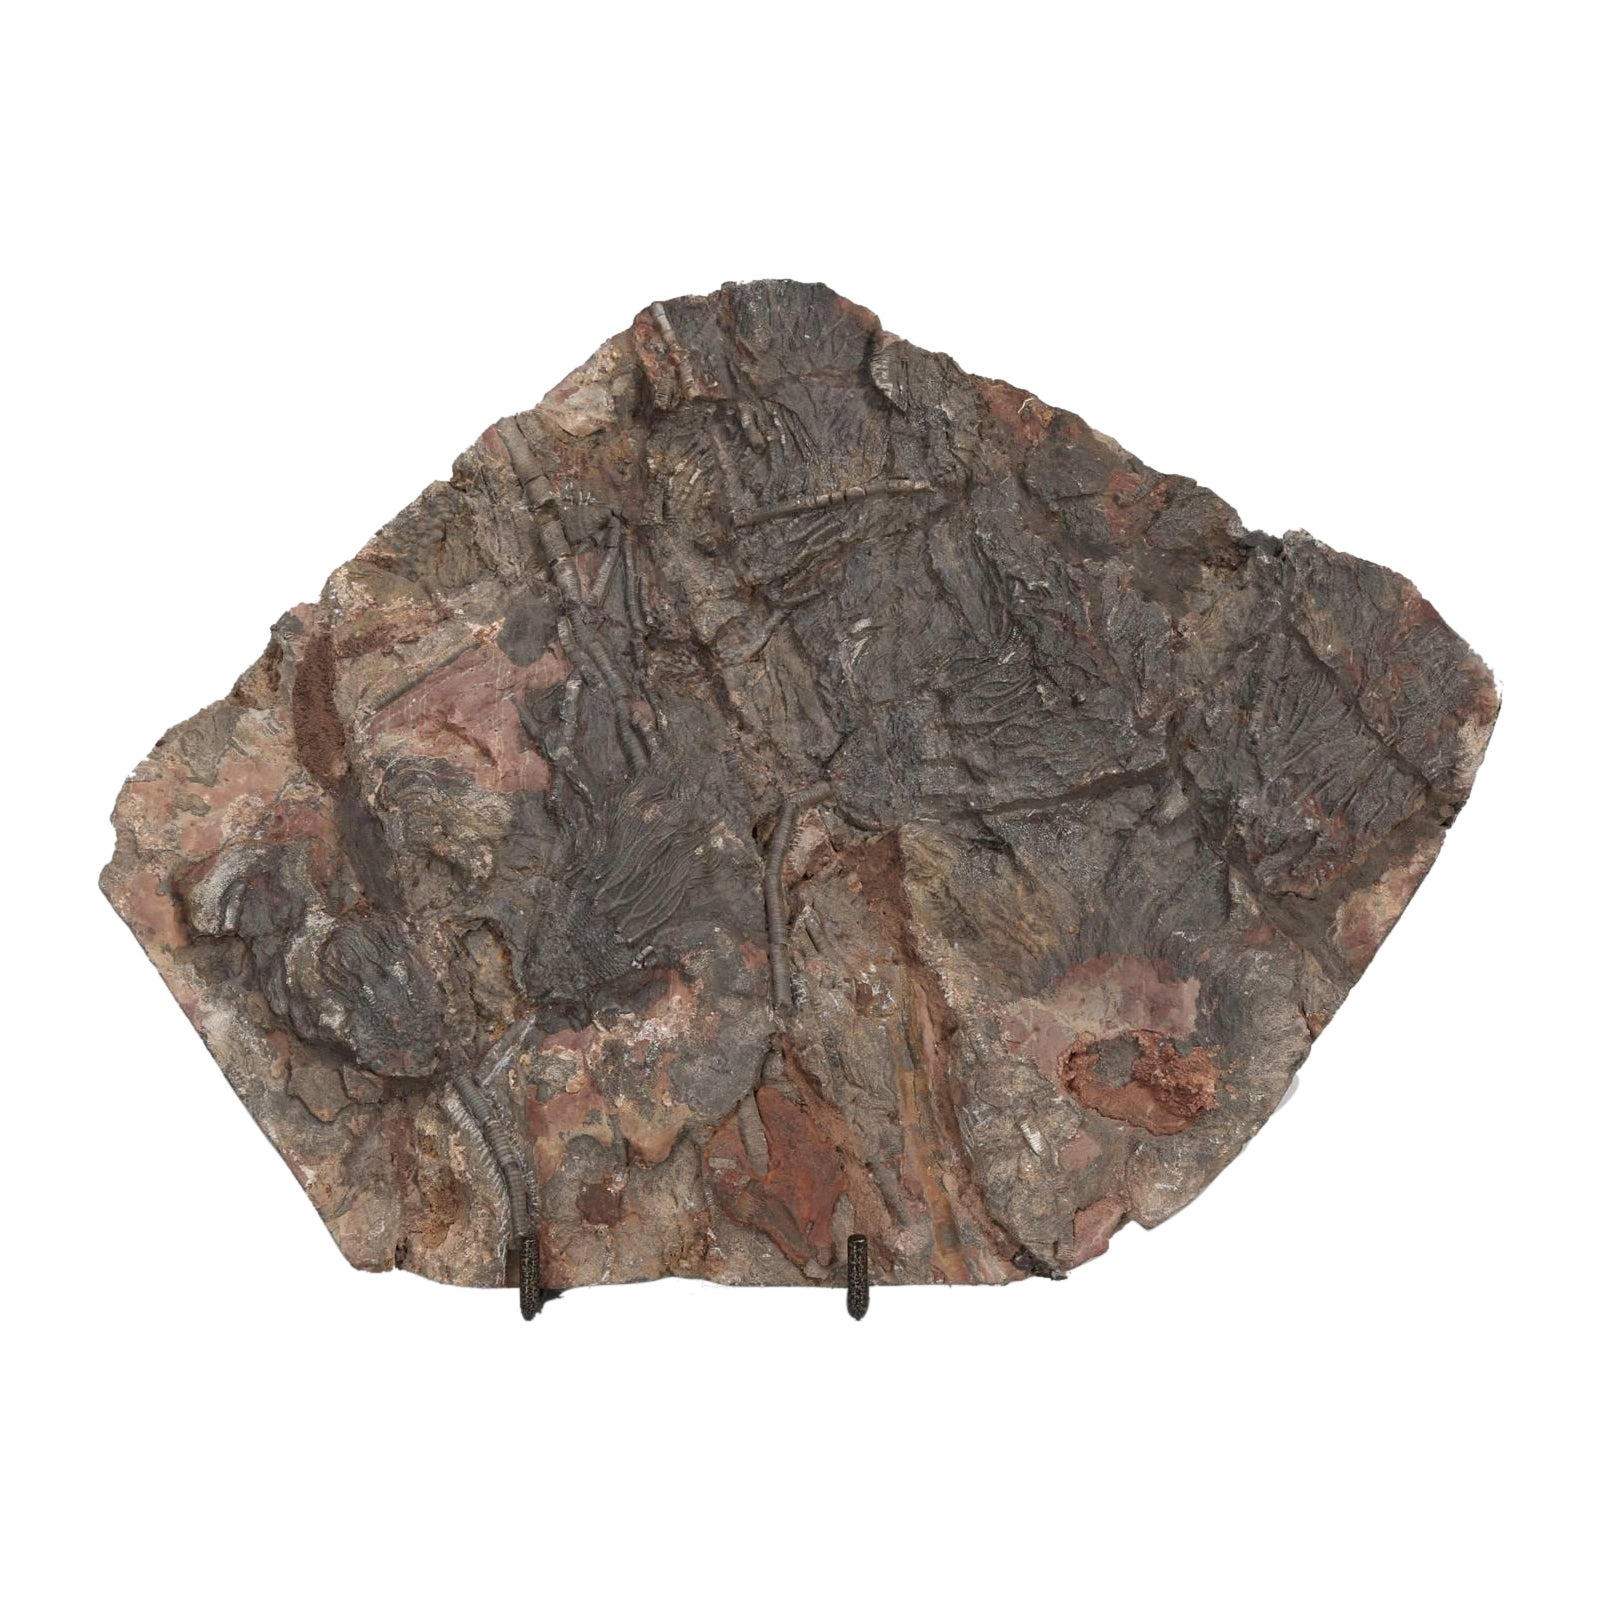 Fossil cranoïde du Maroc, de la période Ordovicéenne 450 millions d'années après J.-C.